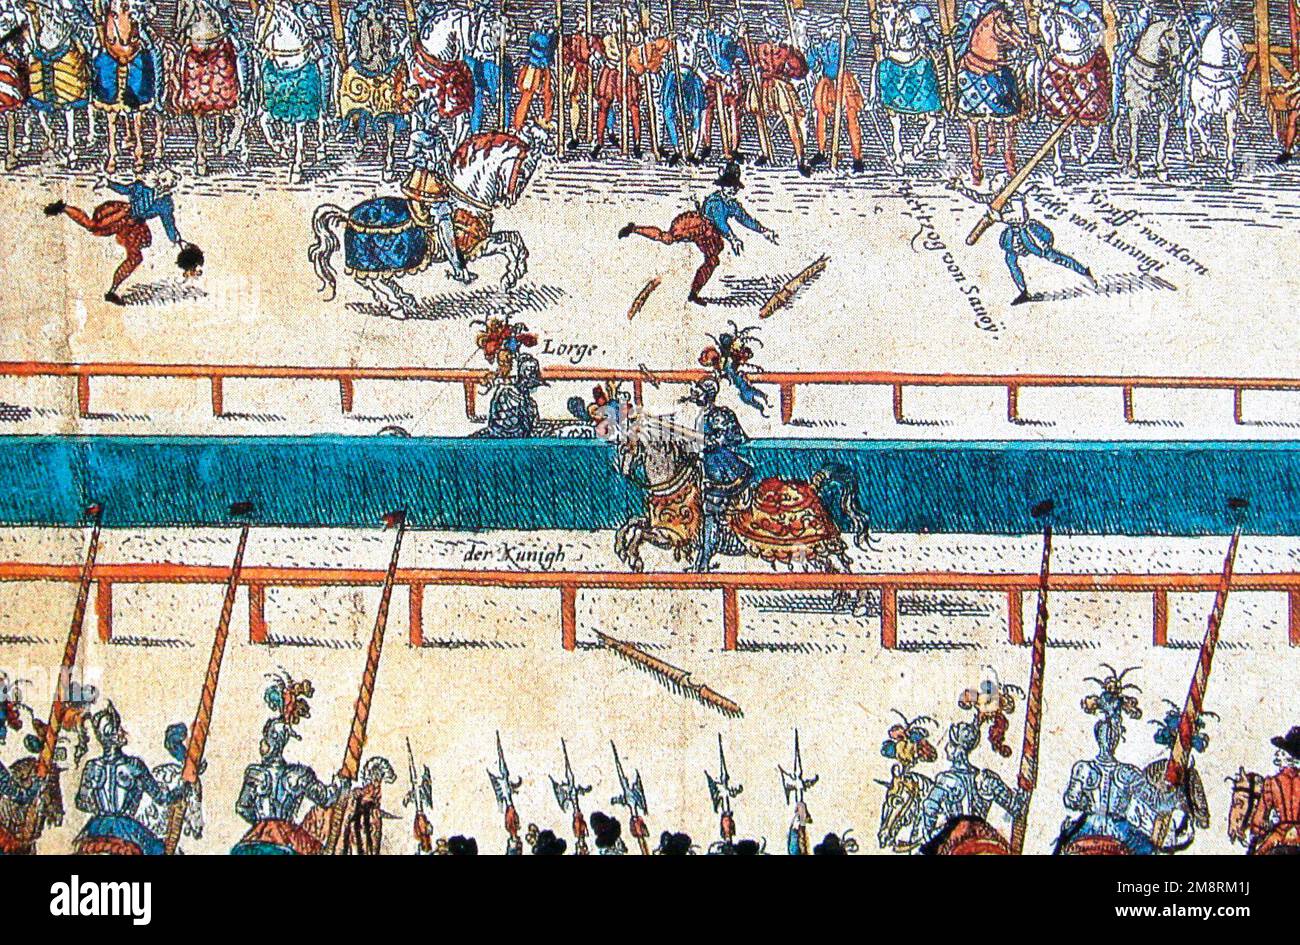 El torneo fatal entre Enrique II y Montgomery (Señor de 'Lorges') Foto de stock